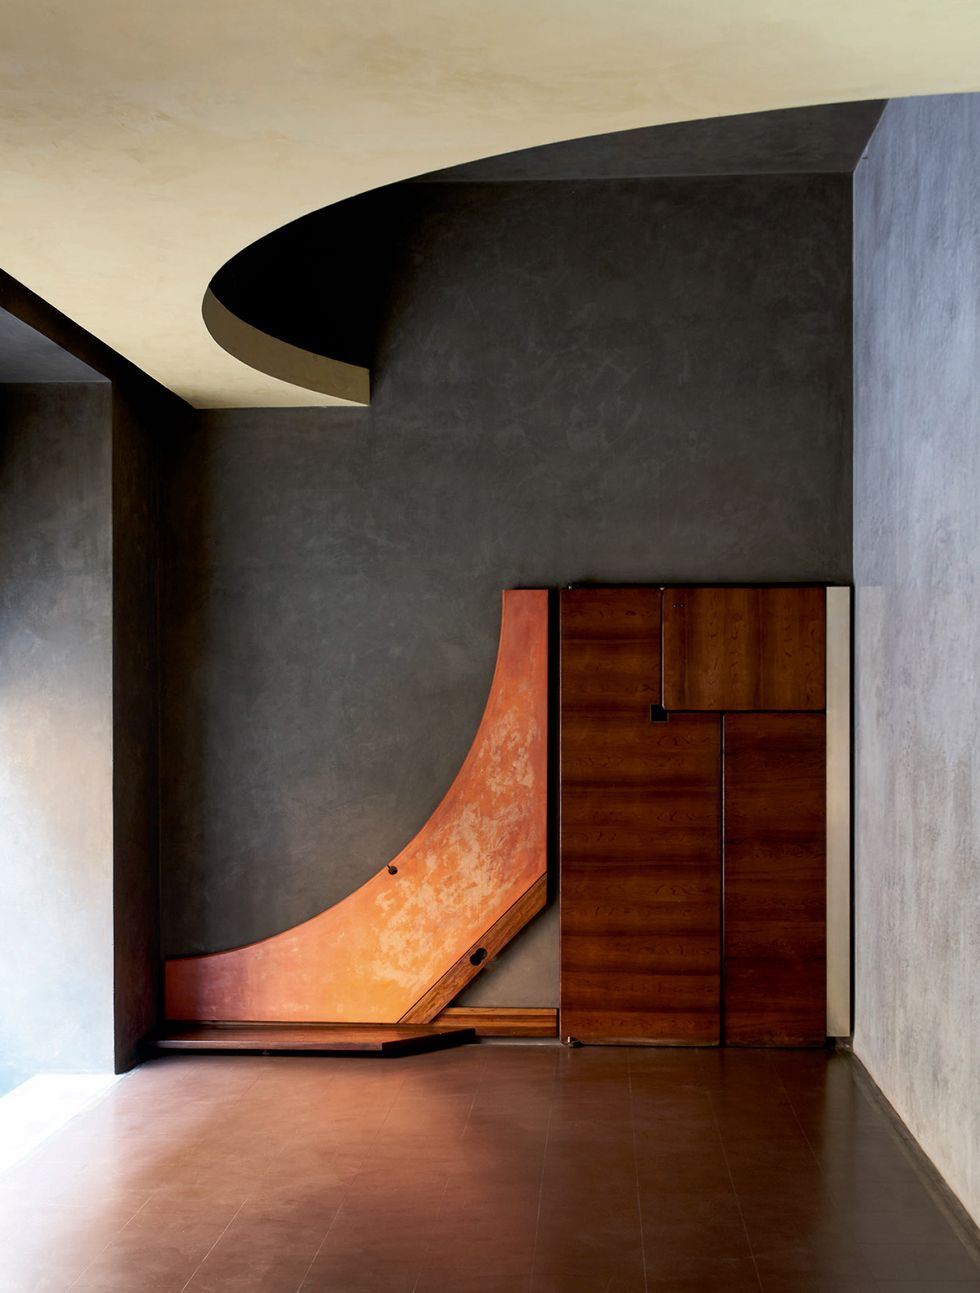 gavina, design, negozio gavina, progettato di carlo scarpa, marieclaire maison italia, dicembre 2020   gennaio 2021